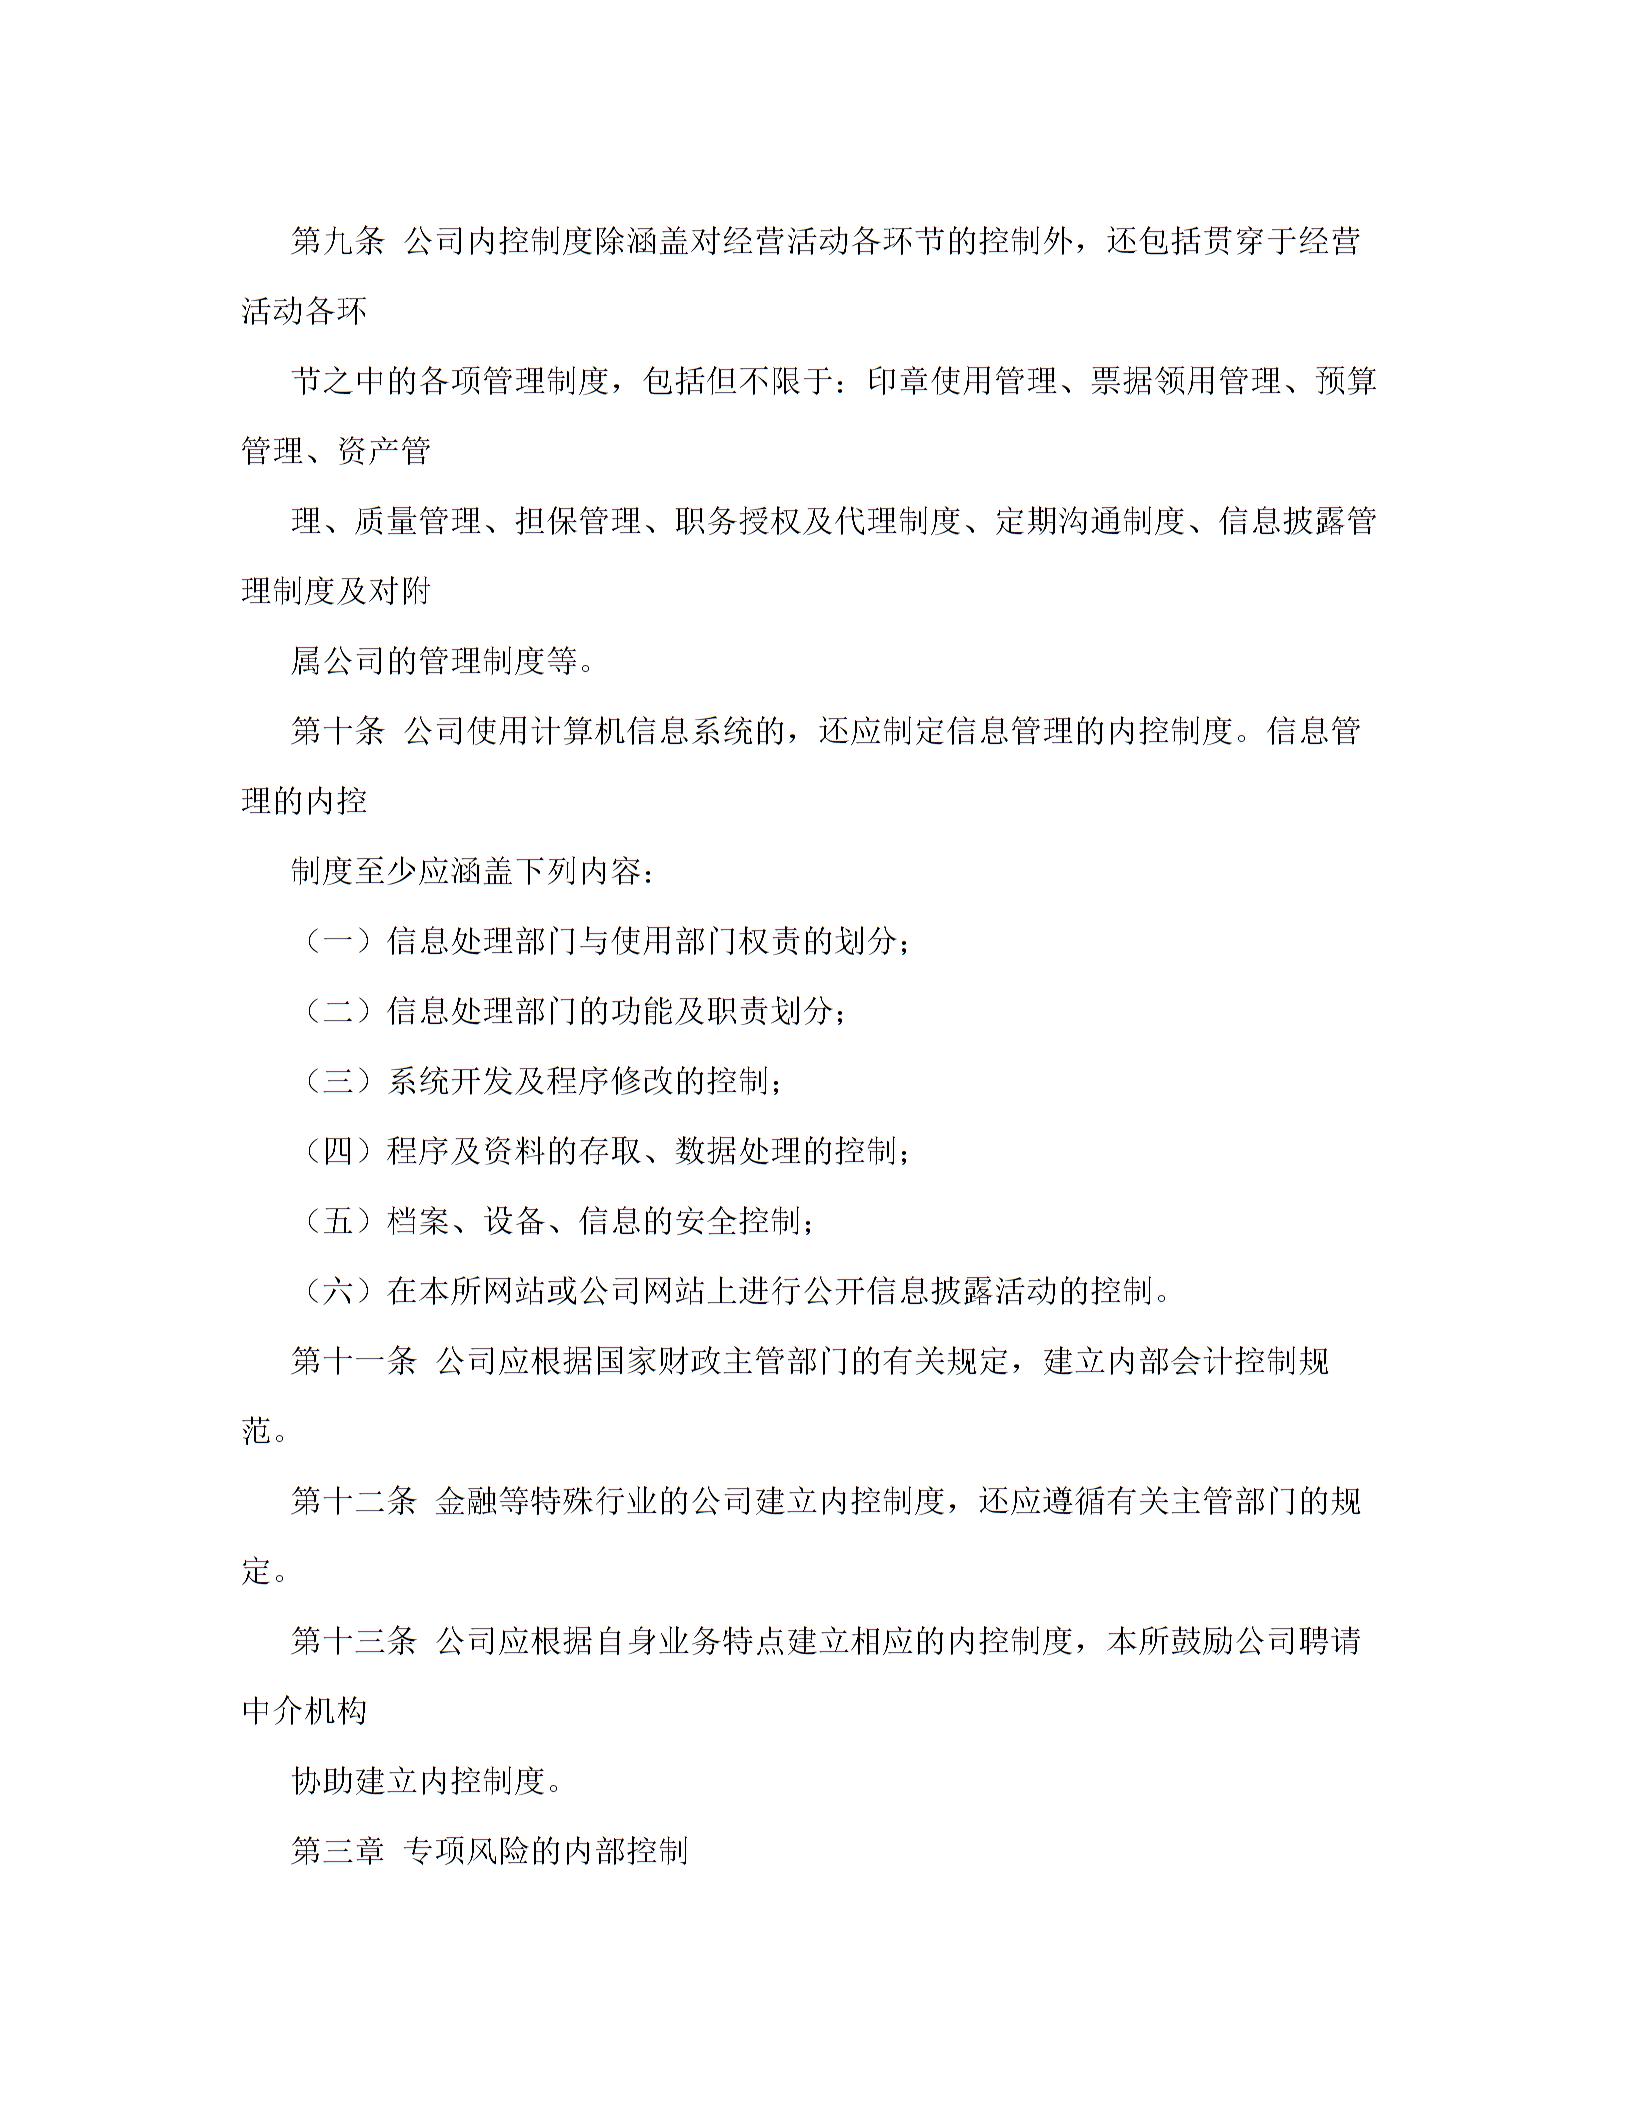 上海证券交易所上市公司内部控制指引图片4